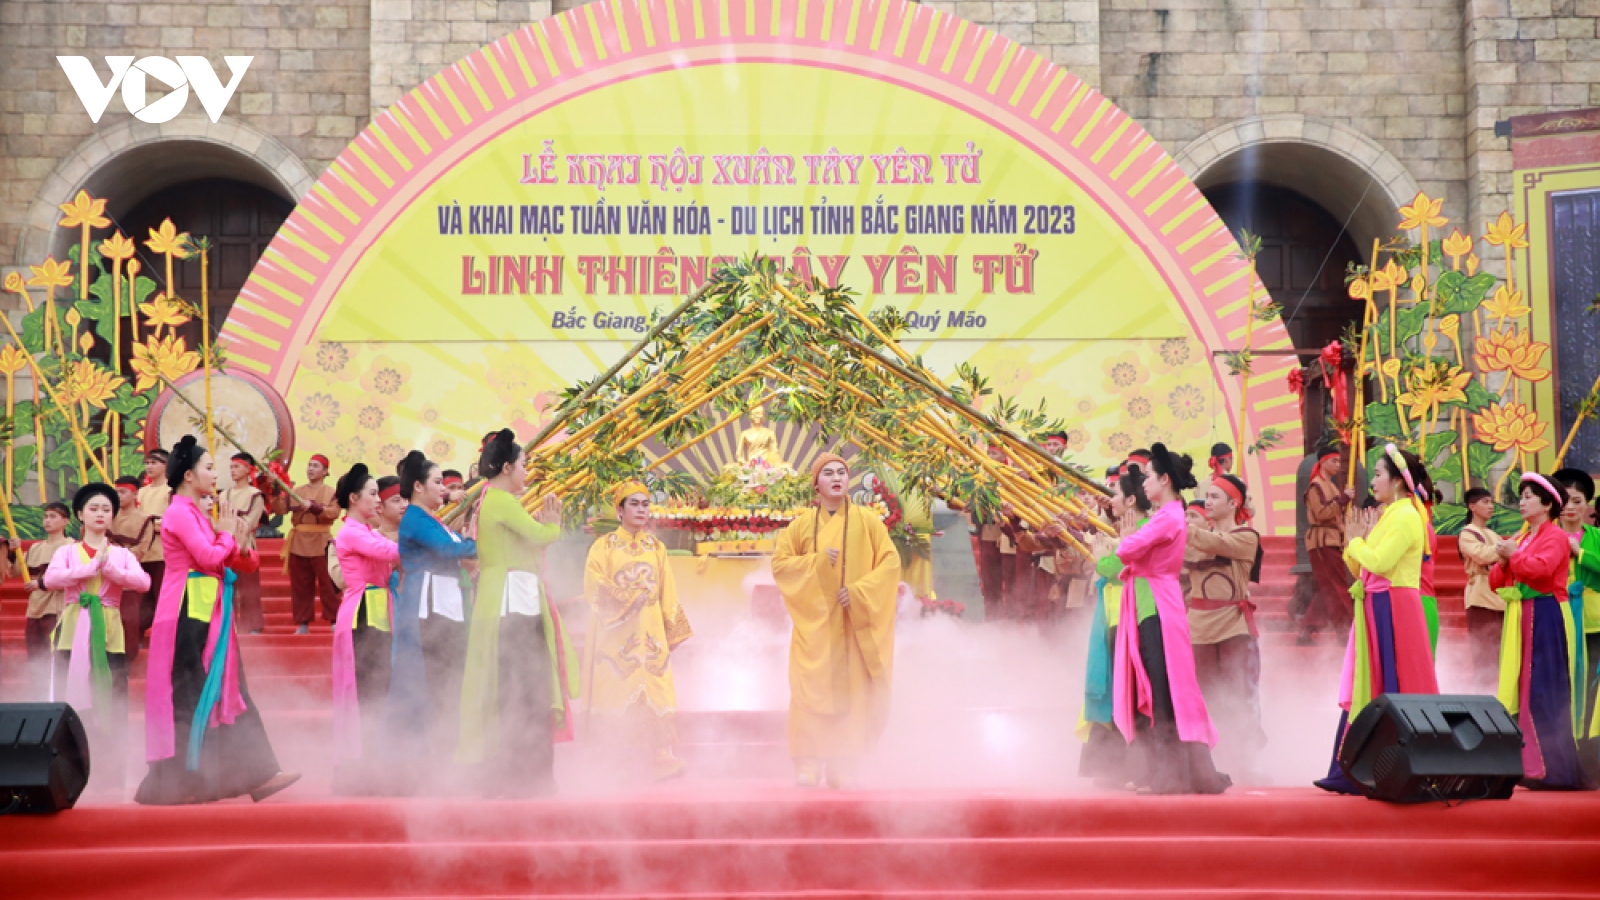 Xây dựng Bắc Giang qua tuần văn hóa du lịch “Linh thiêng Tây Yên Tử”